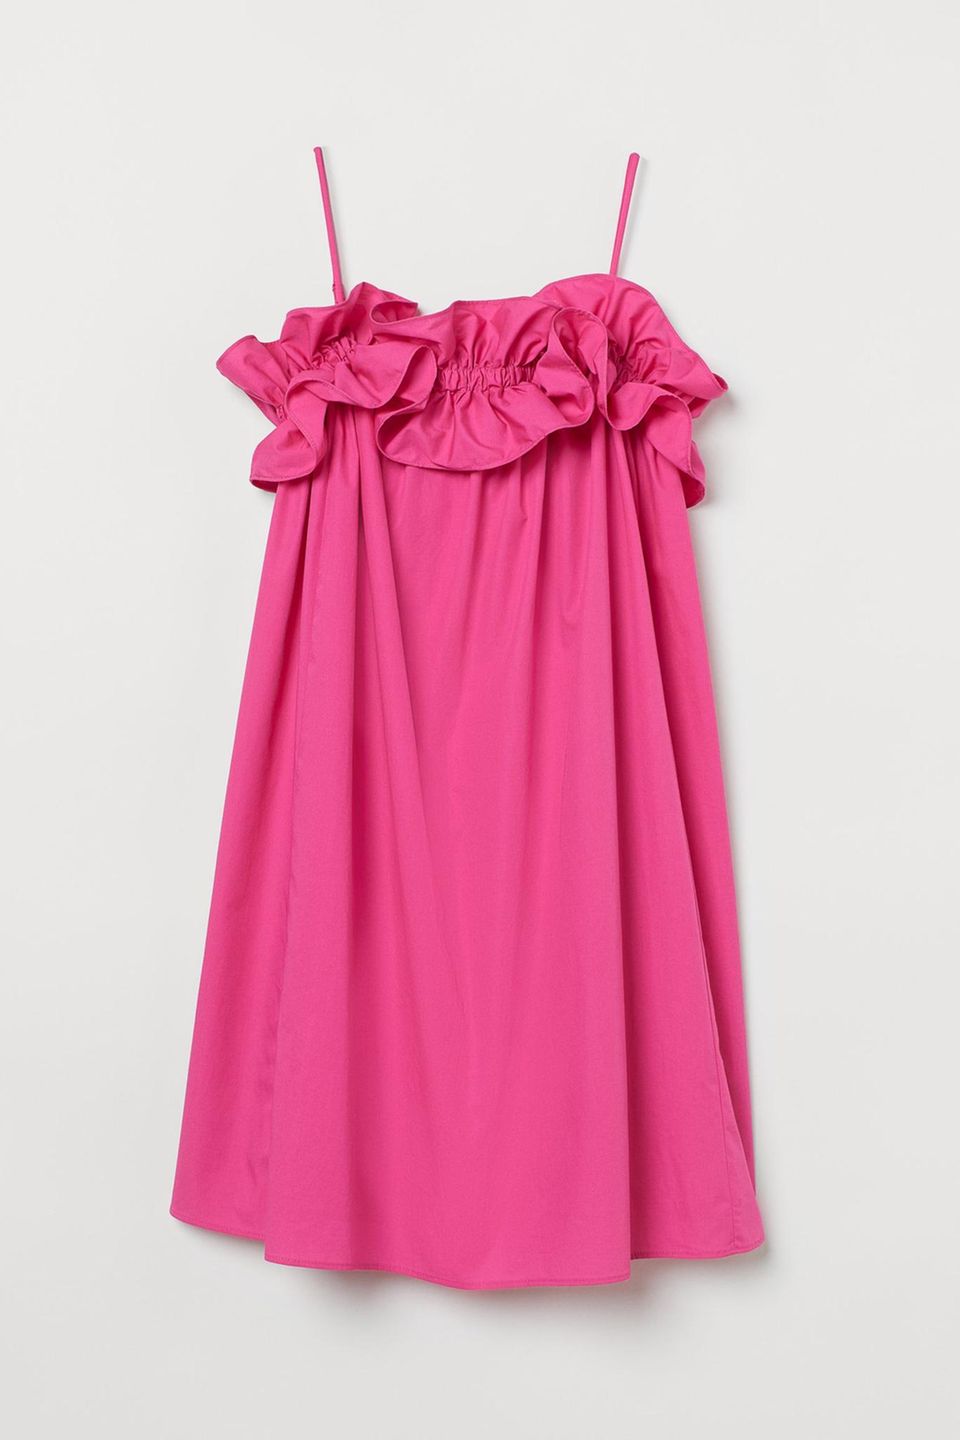 Diese Farbe macht sofort gute Laune: Das quietschpinke Kleid mit Volant am Dekolleté der H&M-Nachhaltigkeitslinie "Conscious" schreit einfach Sommer. Kostet ca. 20 Euro.